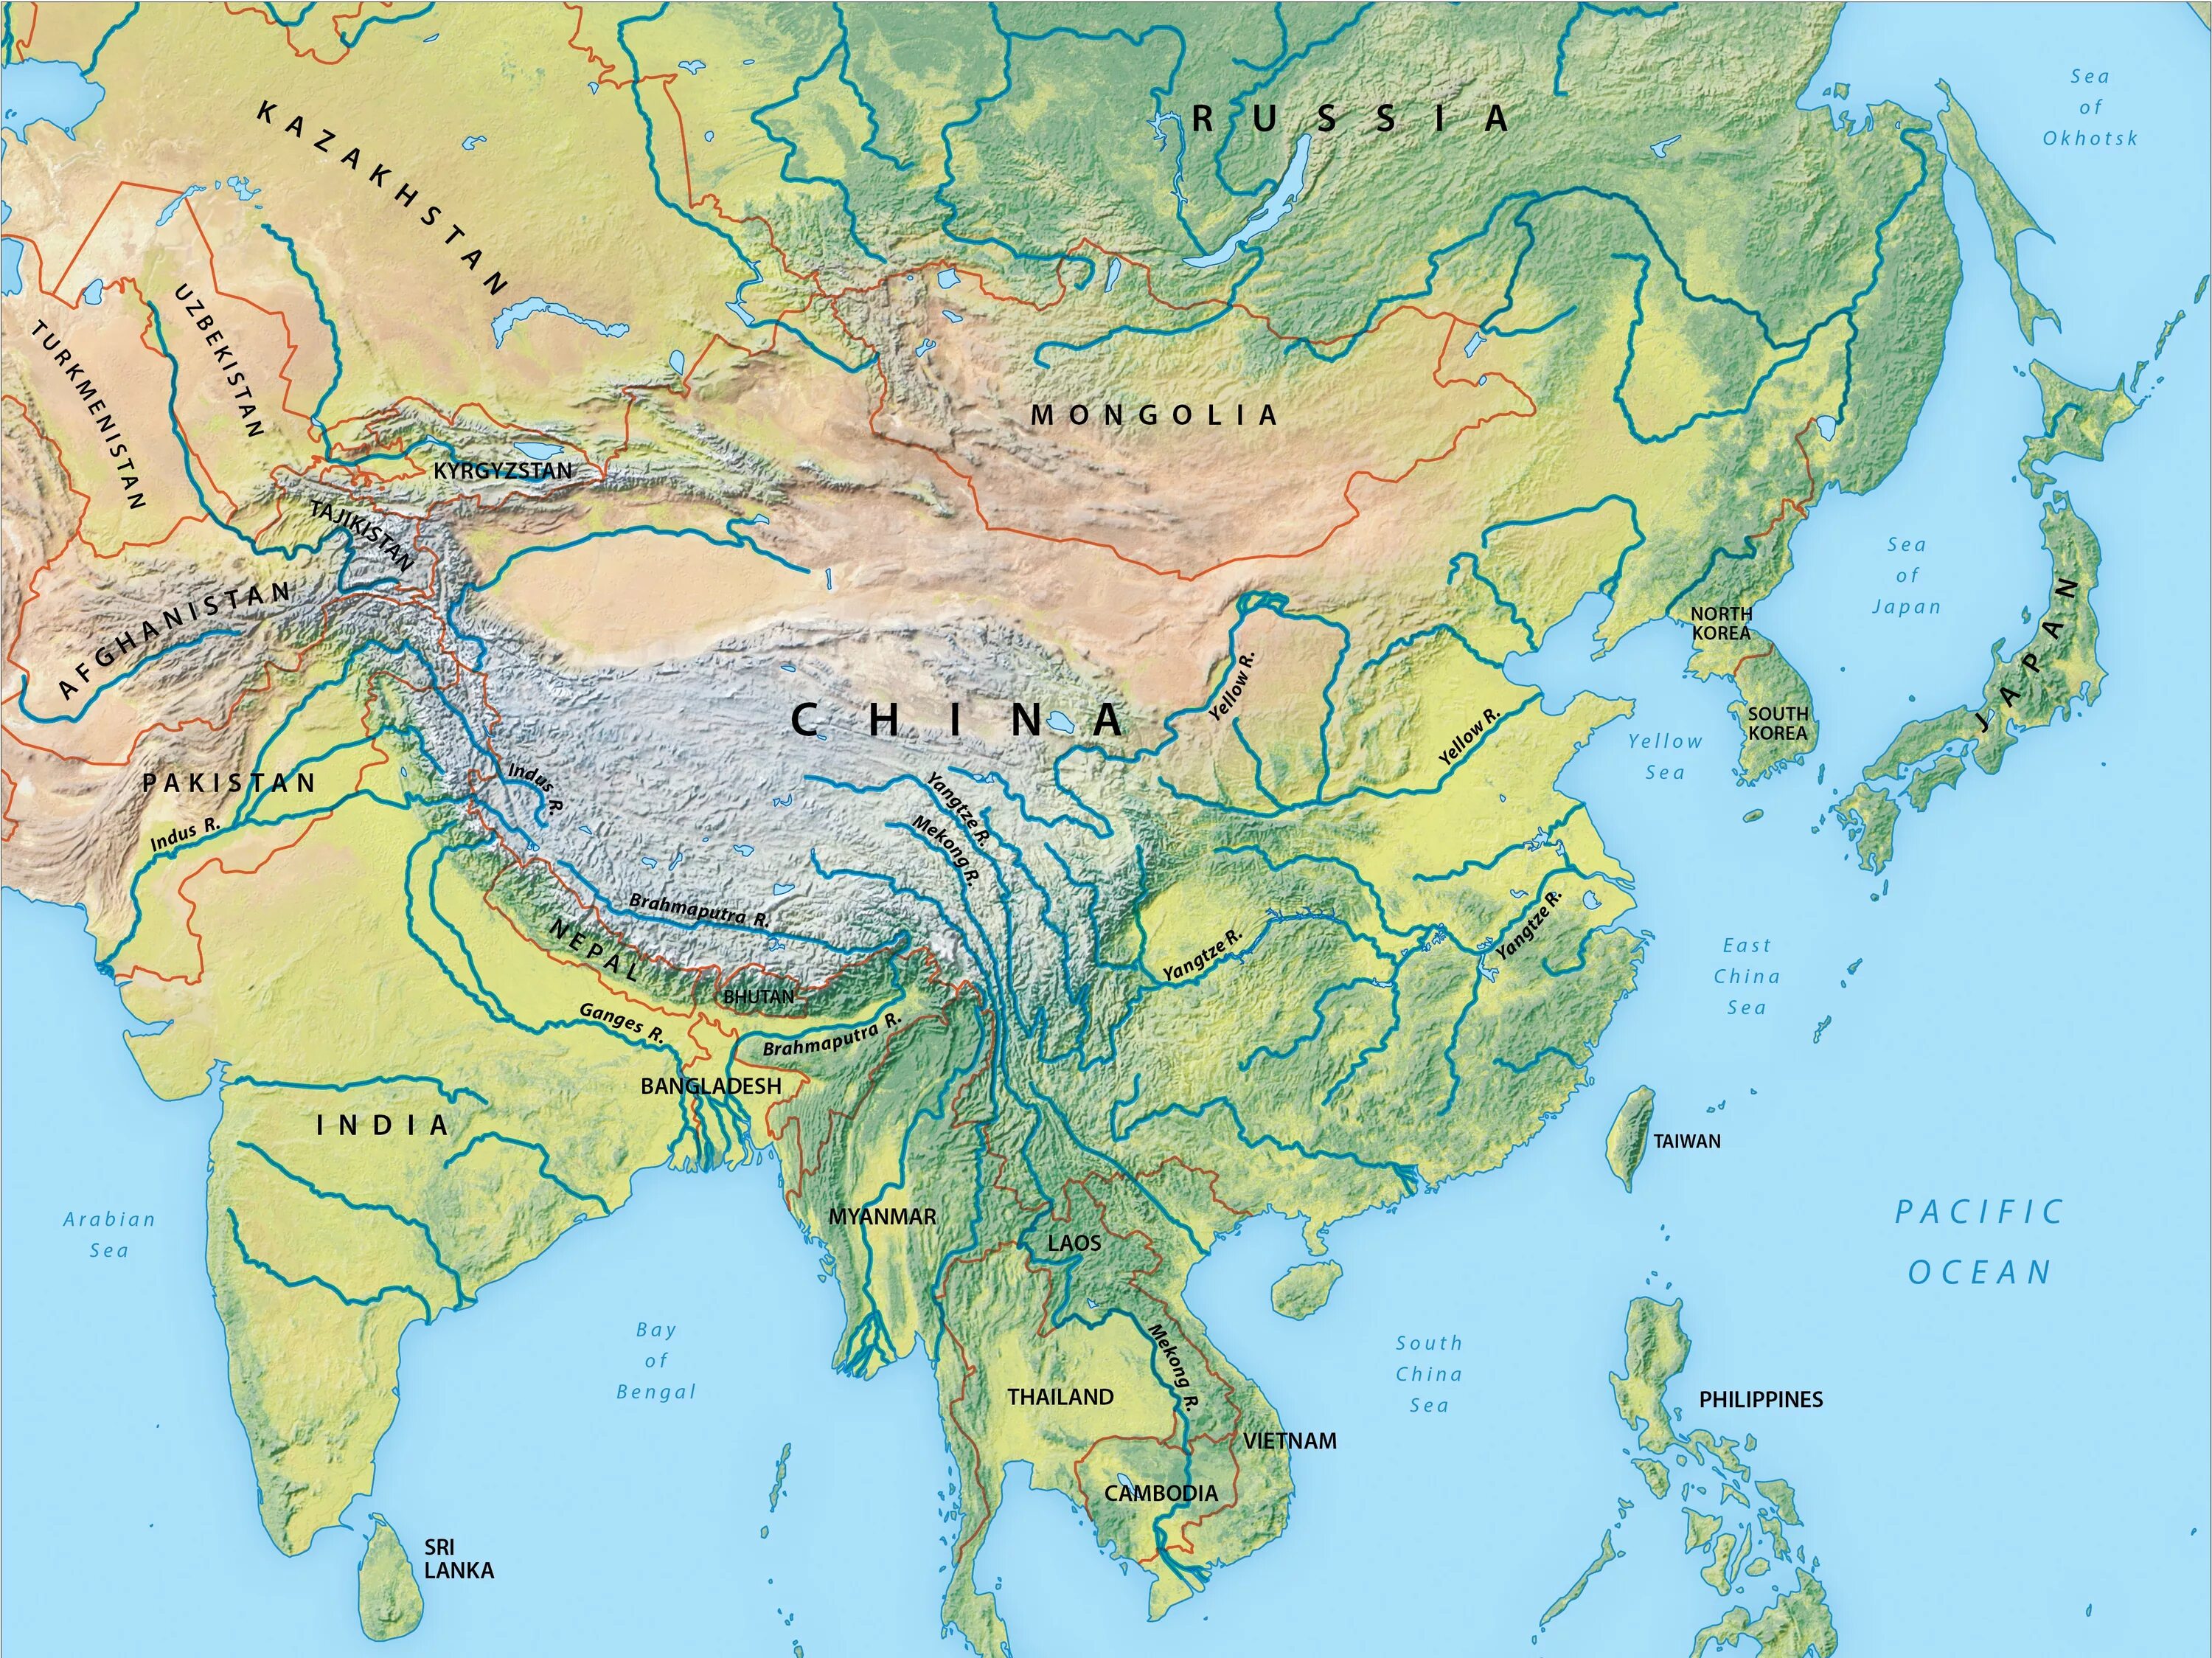 Asia river. Реки Азии на карте. Крупнейшие реки Азии на карте. Зарубежная Азия реки и озера на карте. Крупные реки Азии на карте.